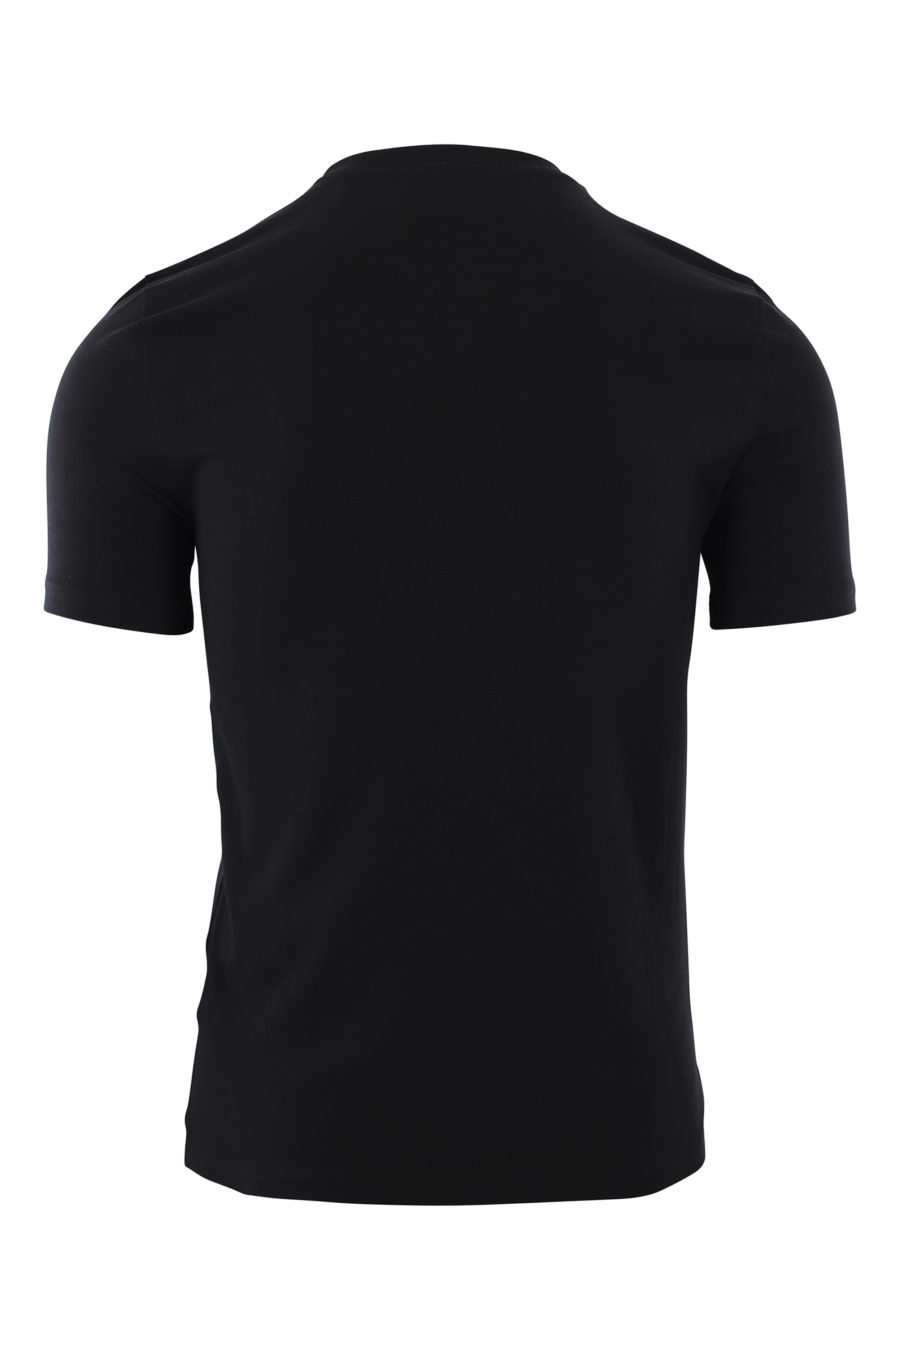 T-shirt preta com o logótipo "smiley" de Milão - IMG 2426